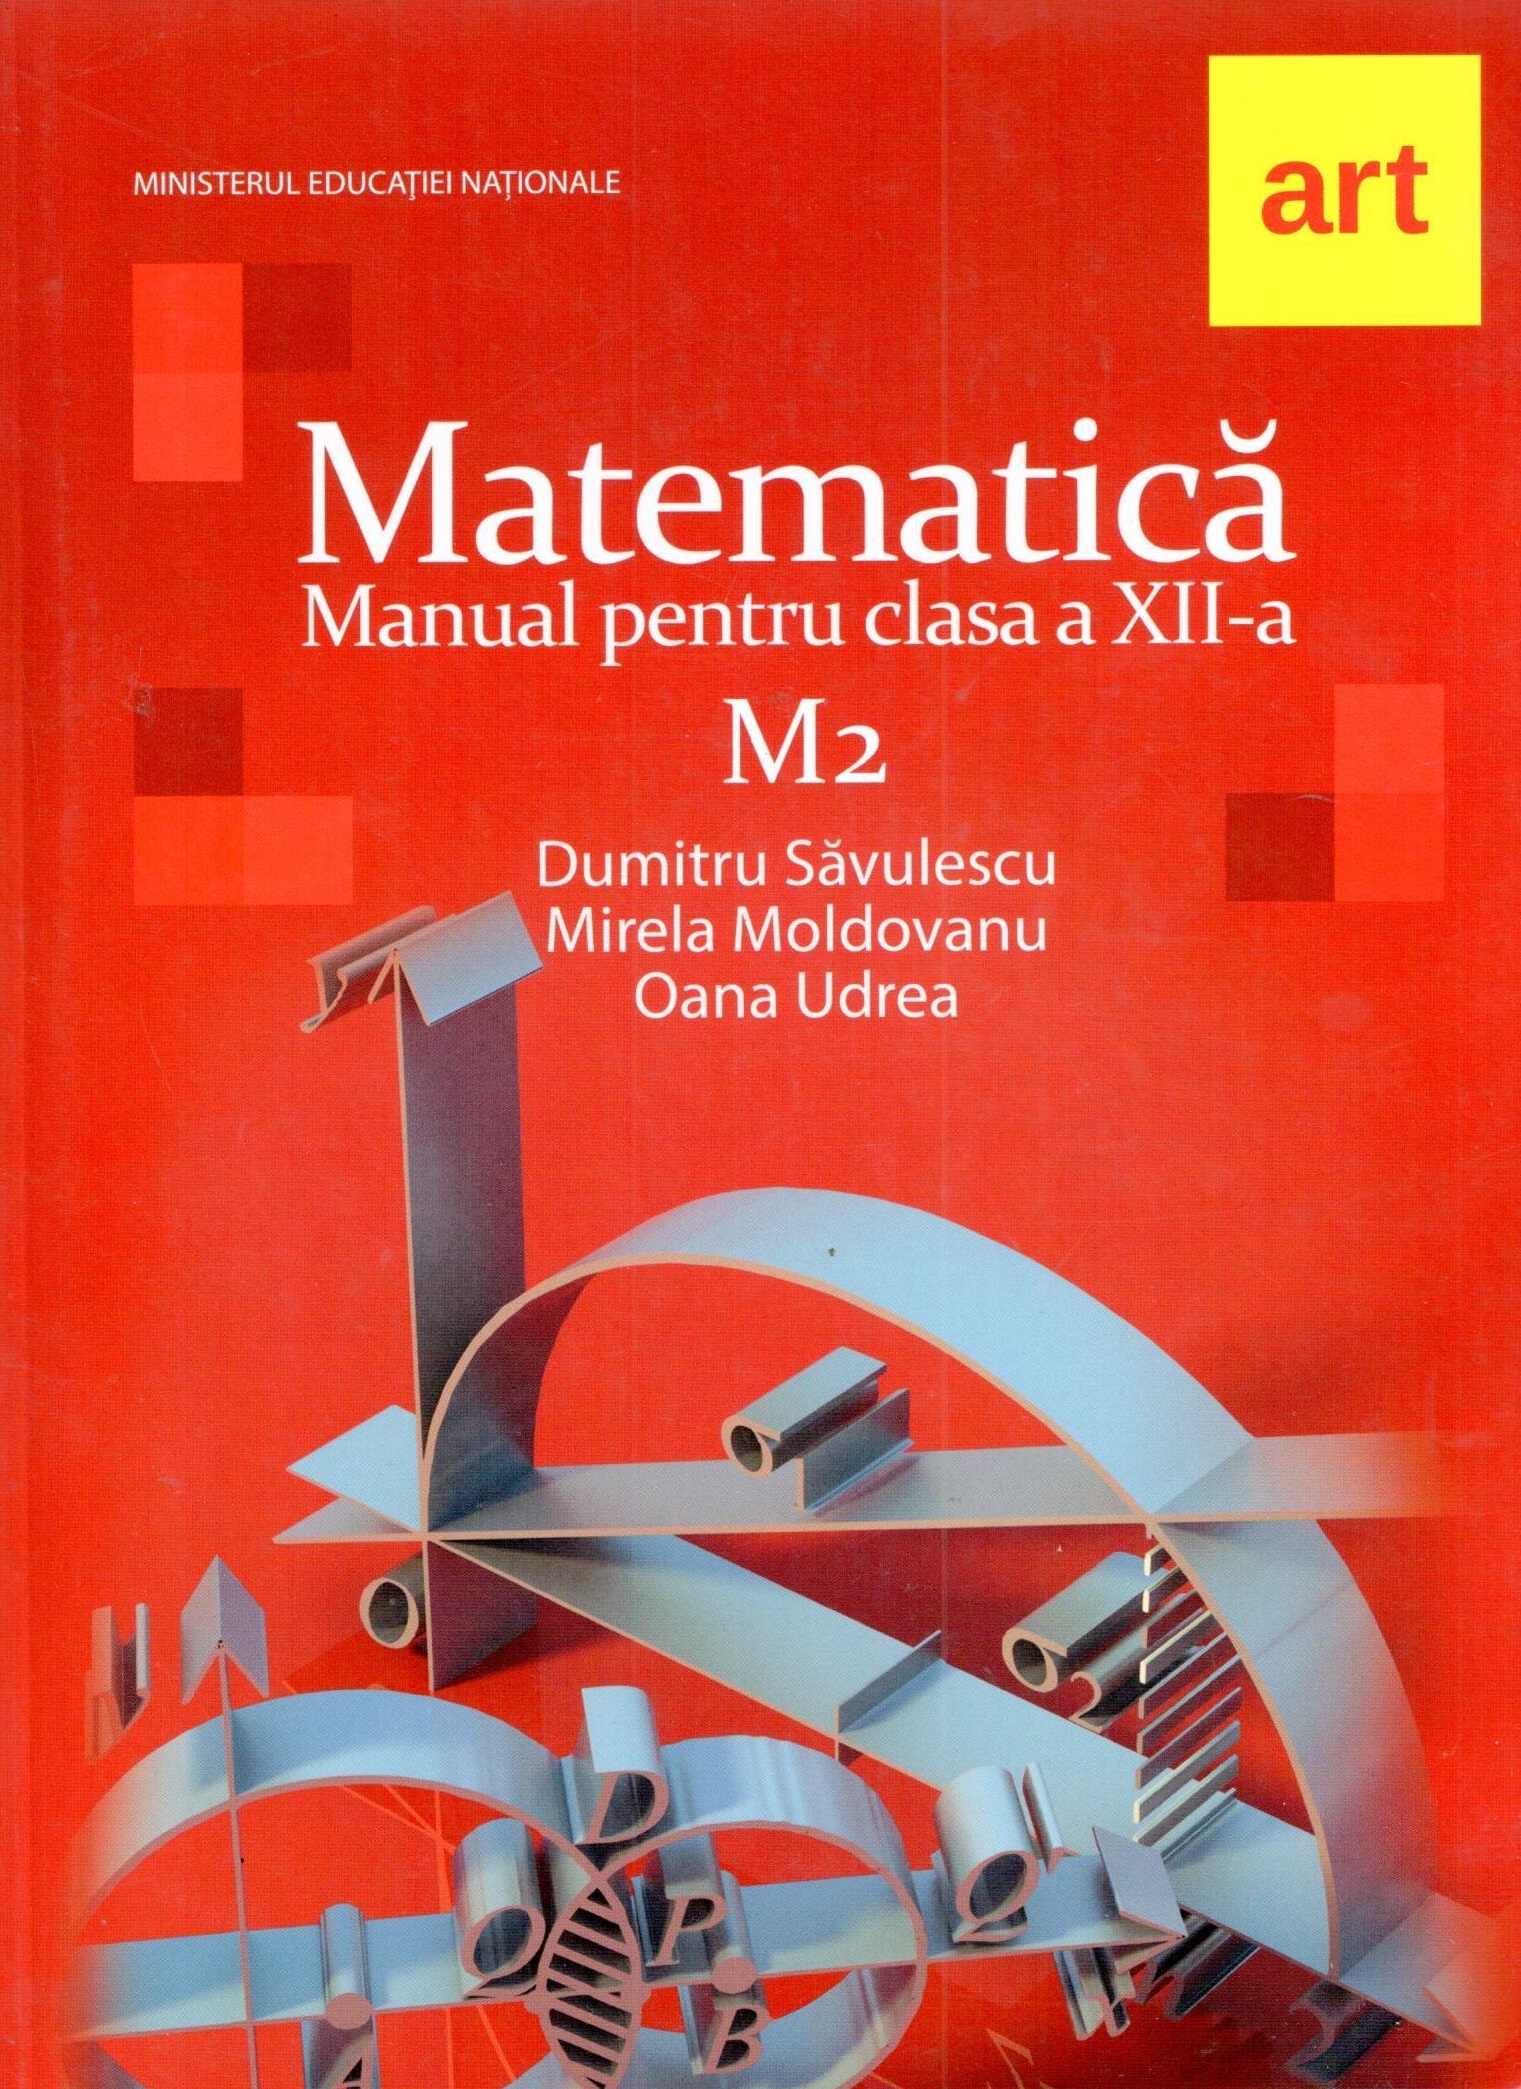 Manual matematica M2 pentru clasa a XII-a | Mirela Moldovan, Dumitru Savulescu ART educational 2022